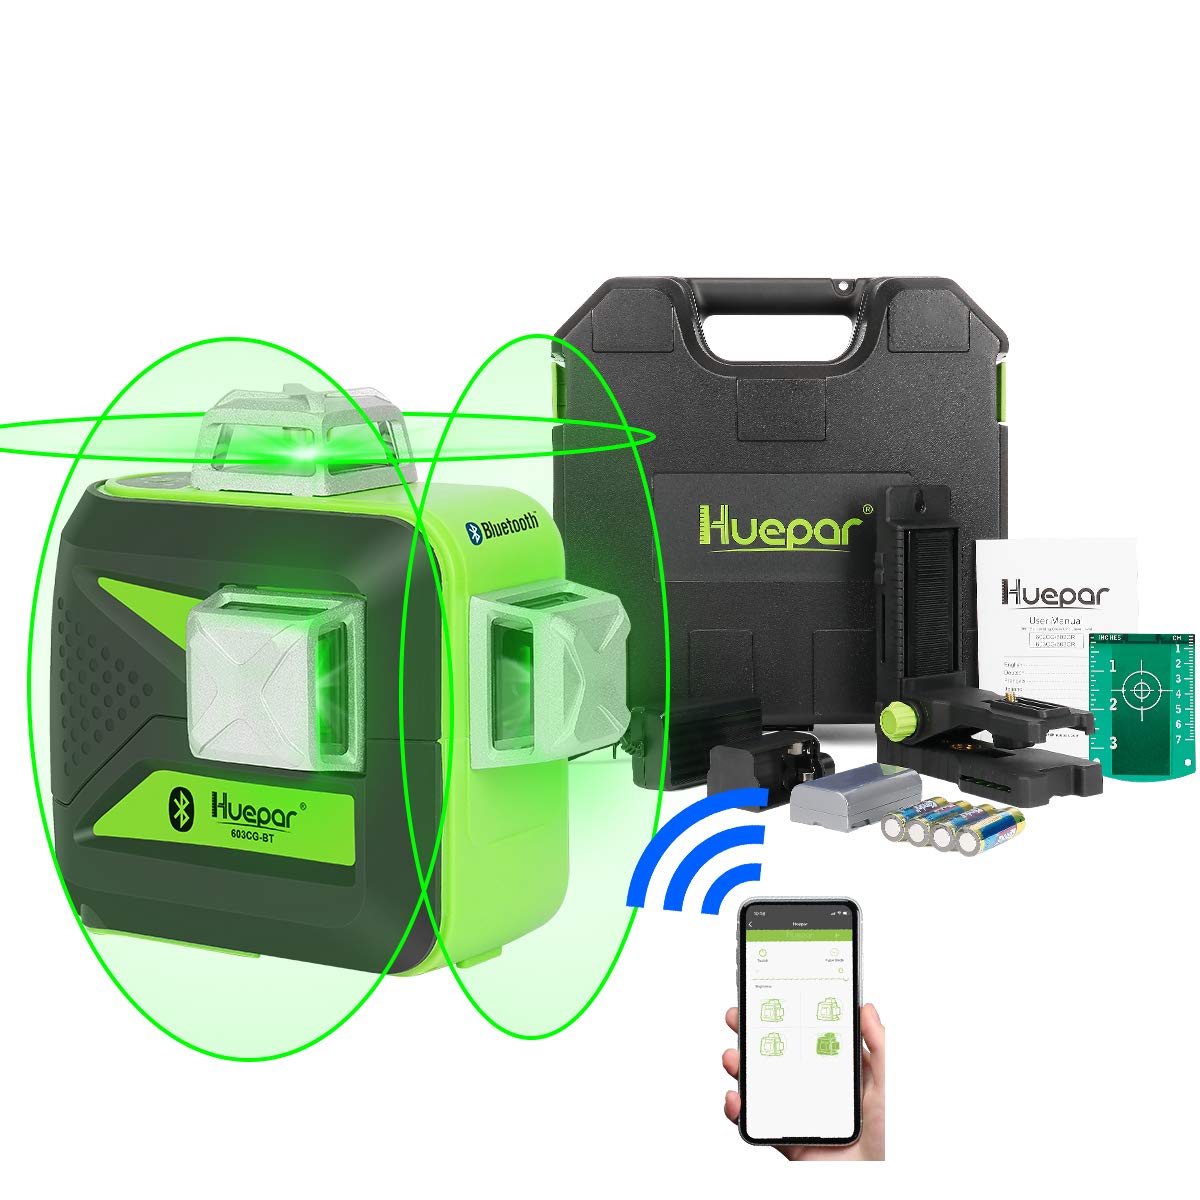 Huepar 603CG-BT - 3 x 360° Green Beam 3D Laser Level with Bluetooth Connectivity